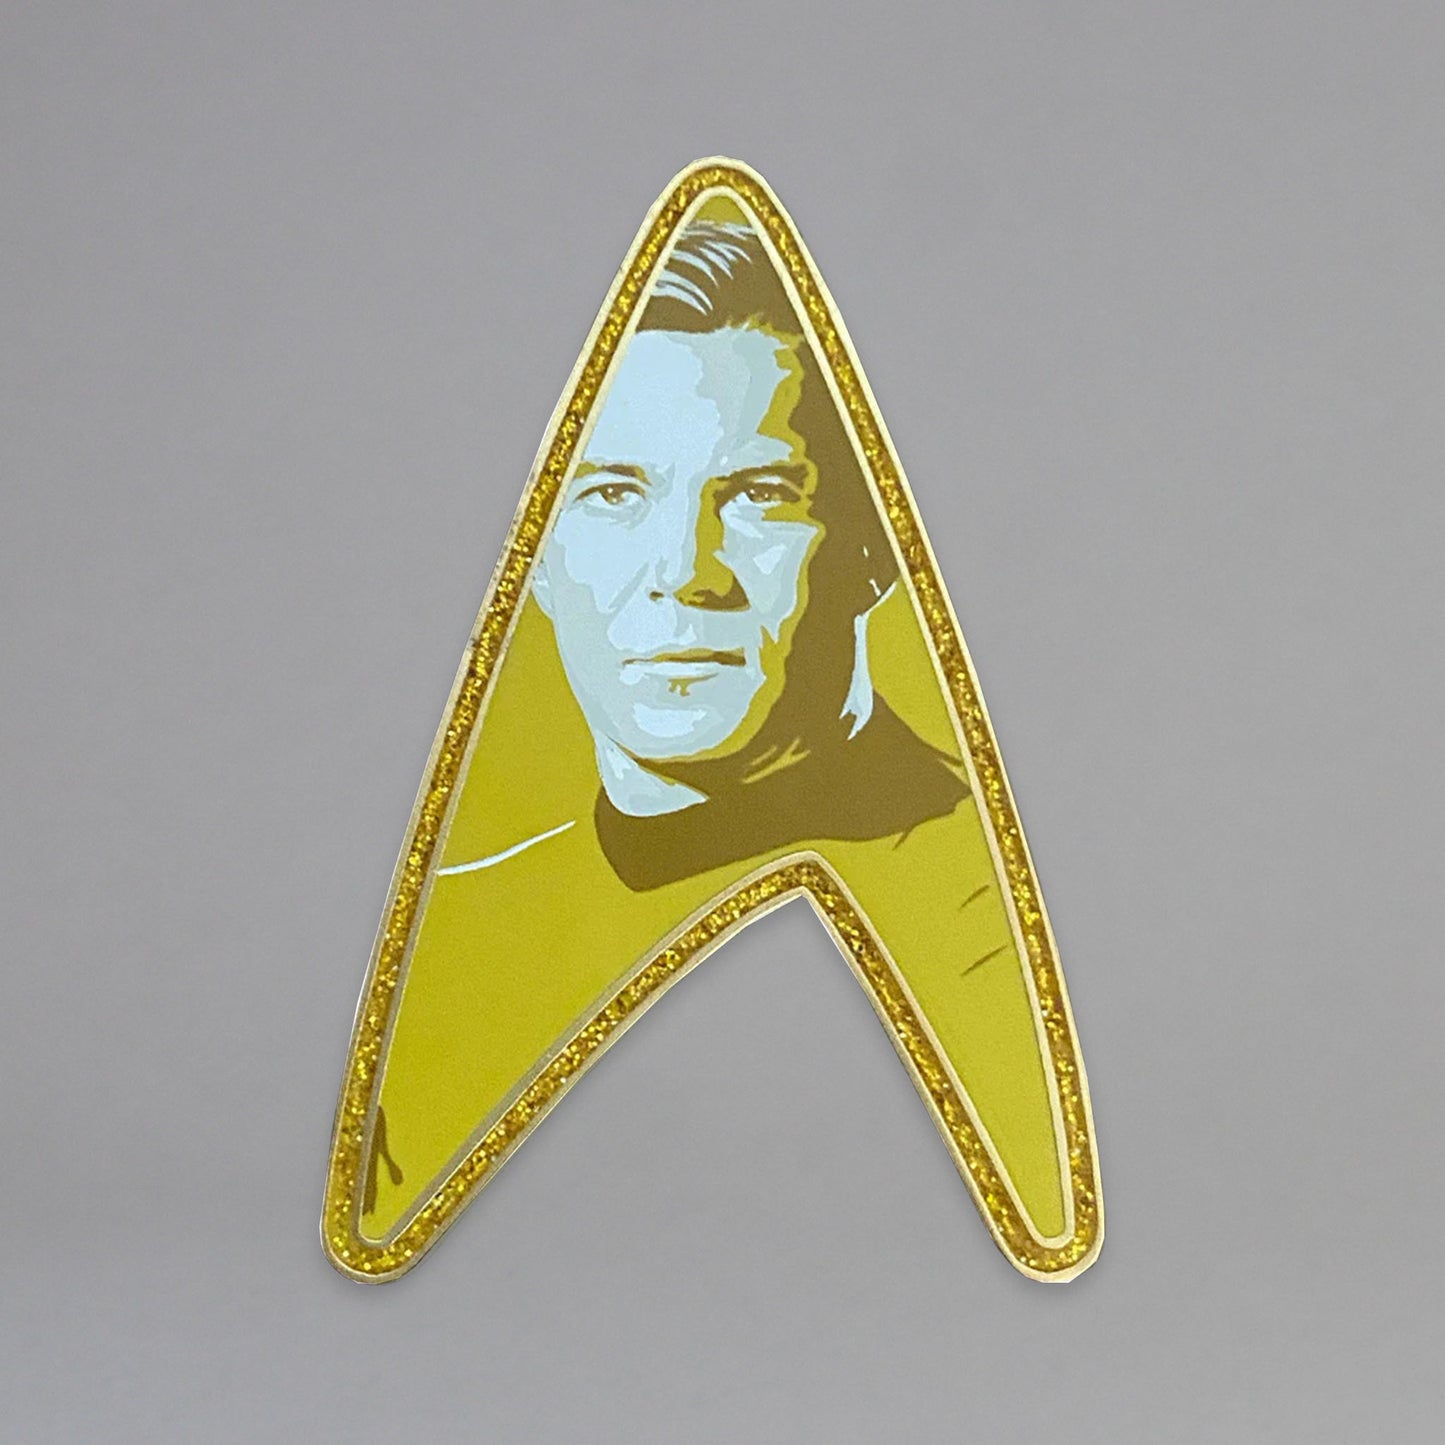 Captain Kirk's Delta (Star Trek: The Original Series) Pin